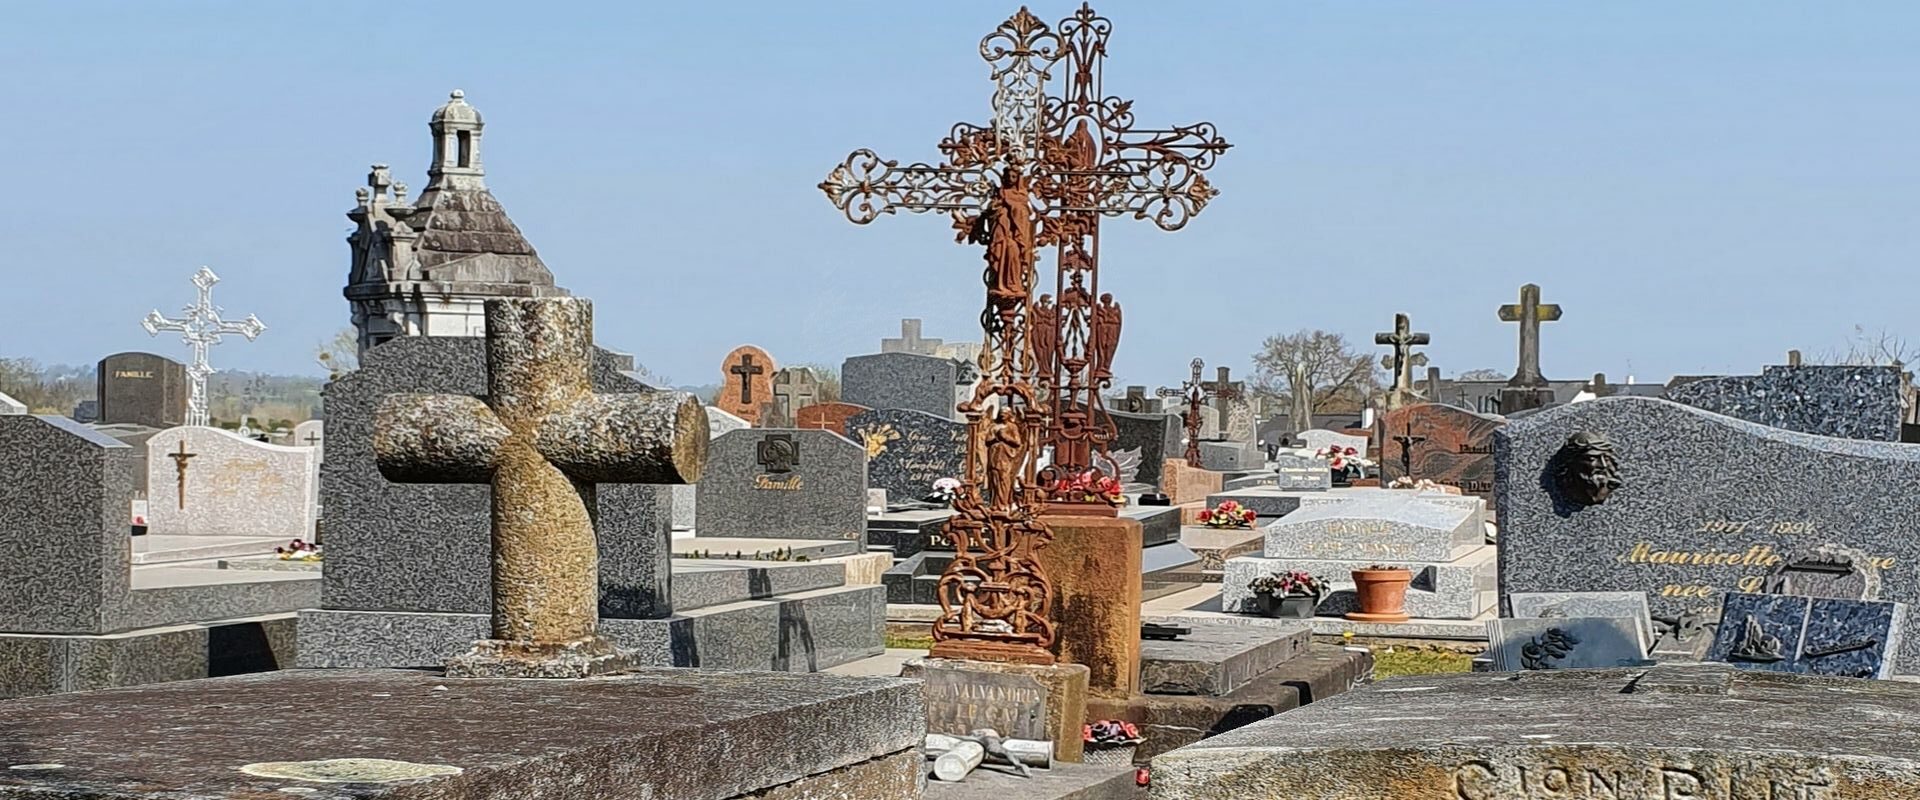 Frankreich: Normandie: Cimetière Pontorson: Friedhof; Fransa: Normandiya: Cimetière Pontorson: Mezarlık